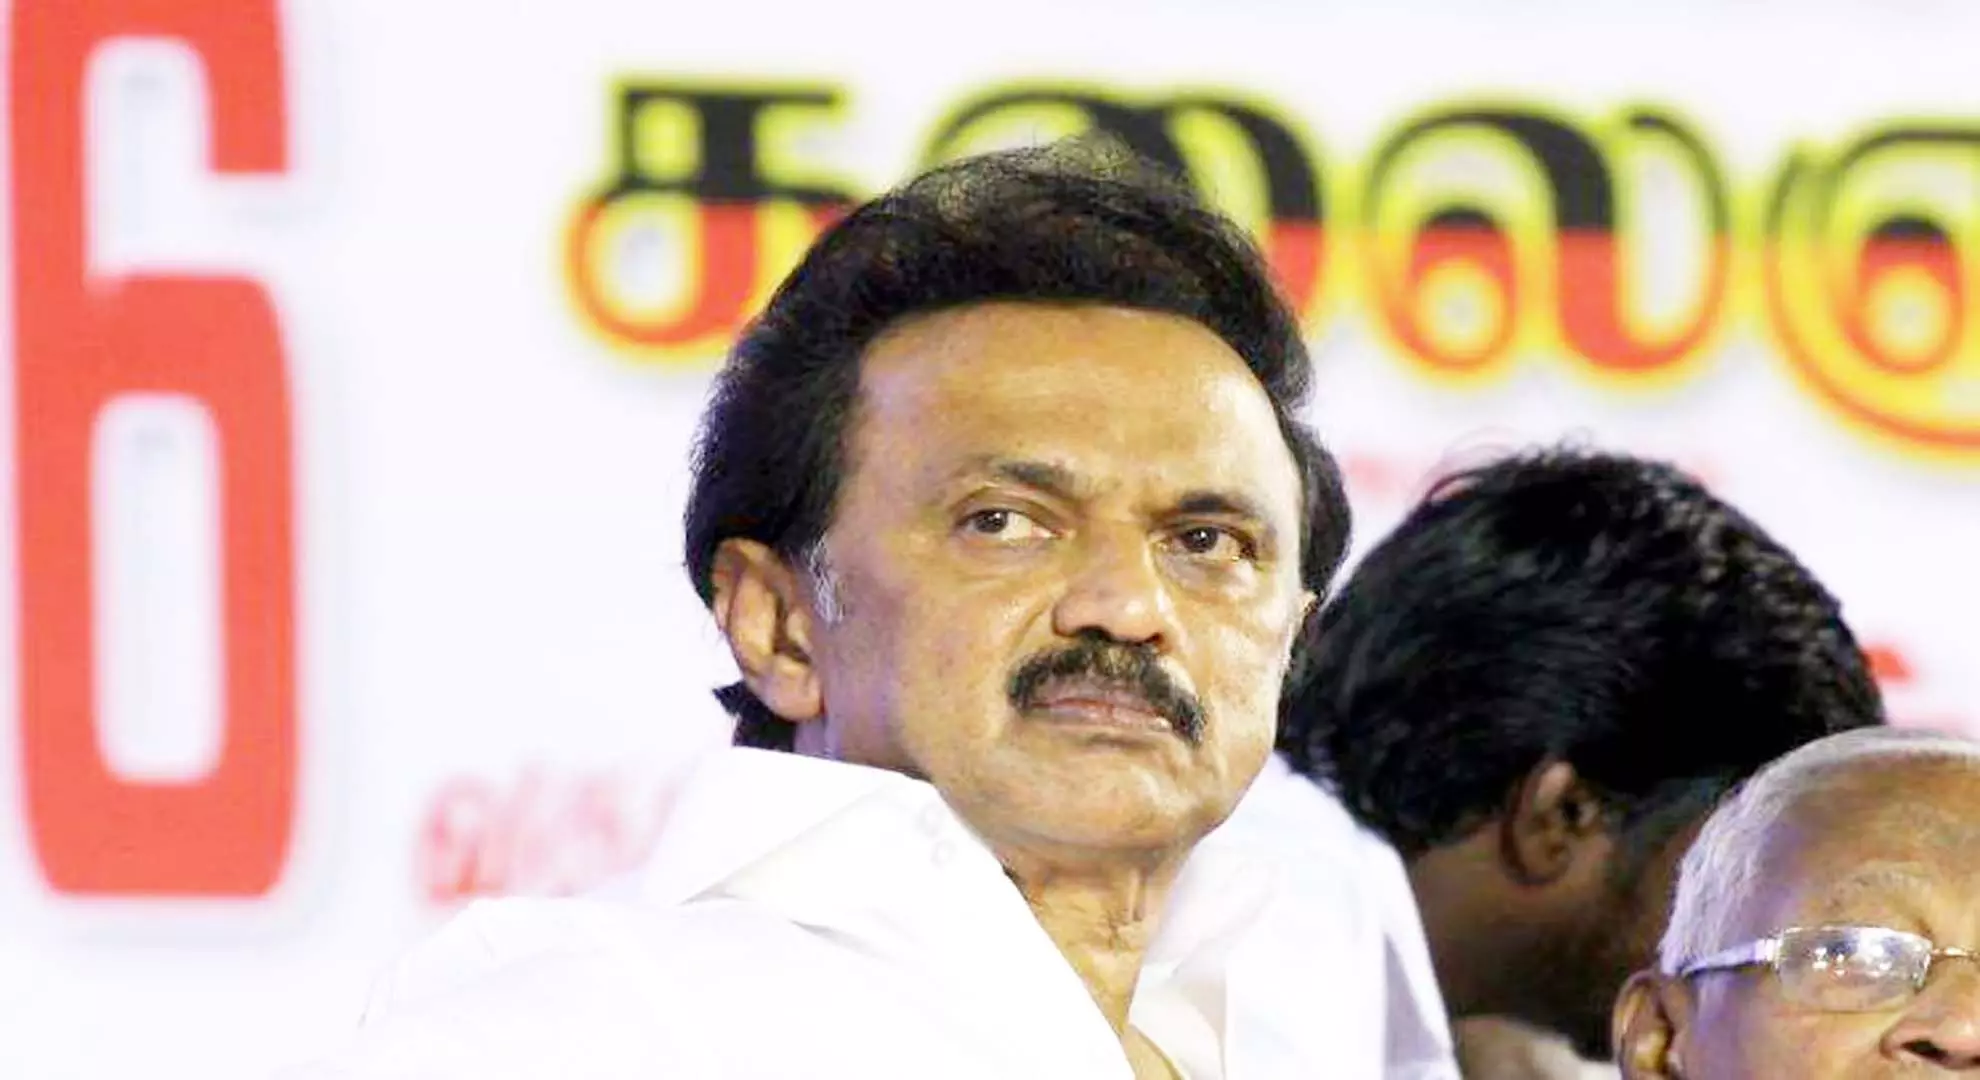 तमिलनाडु के सीएम स्टालिन ने ड्रग तस्करी वाले बयानों से उन्हें बदनाम करने के लिए ईपीएस, अन्नामलाई पर मुकदमा दायर किया